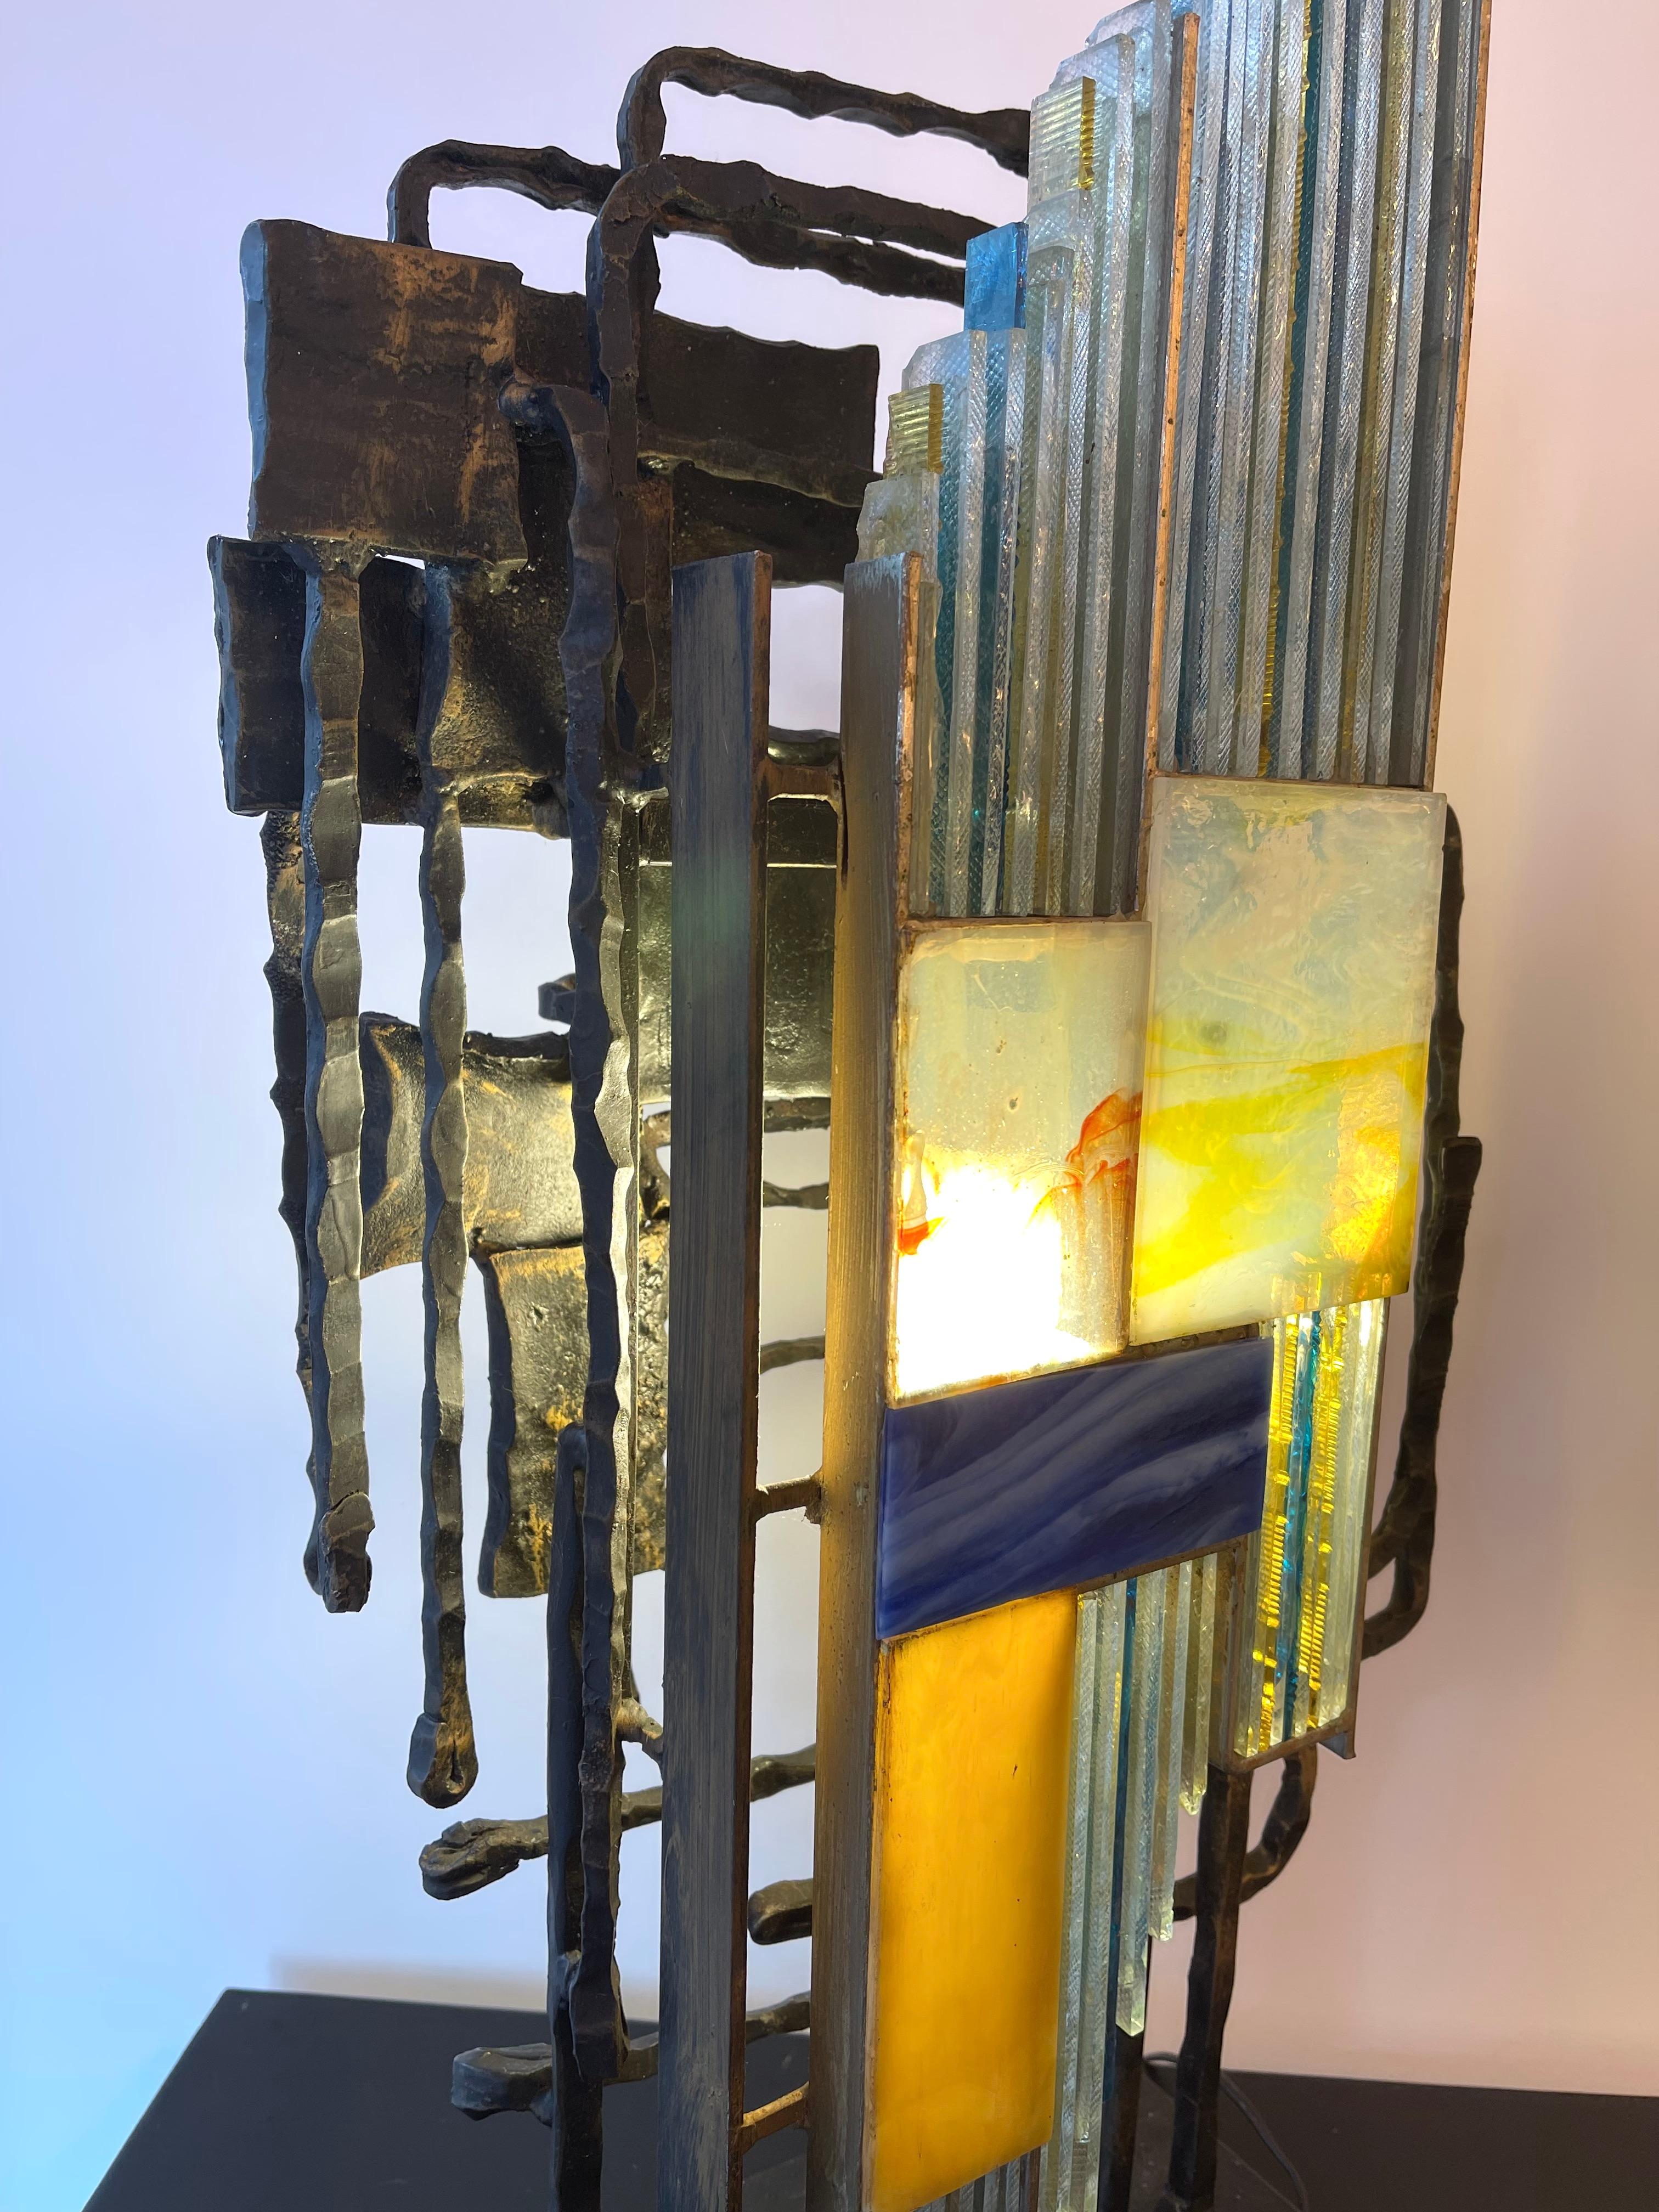 Sculpture moderne du milieu du siècle lampe-applique en verre martelé et fer forgé, par la manufacture Biancardi & Jordan à Vérone dans un style Brutalist, le concurrent de Longobard et Poliarte au cours des années 1970. Des designers célèbres comme